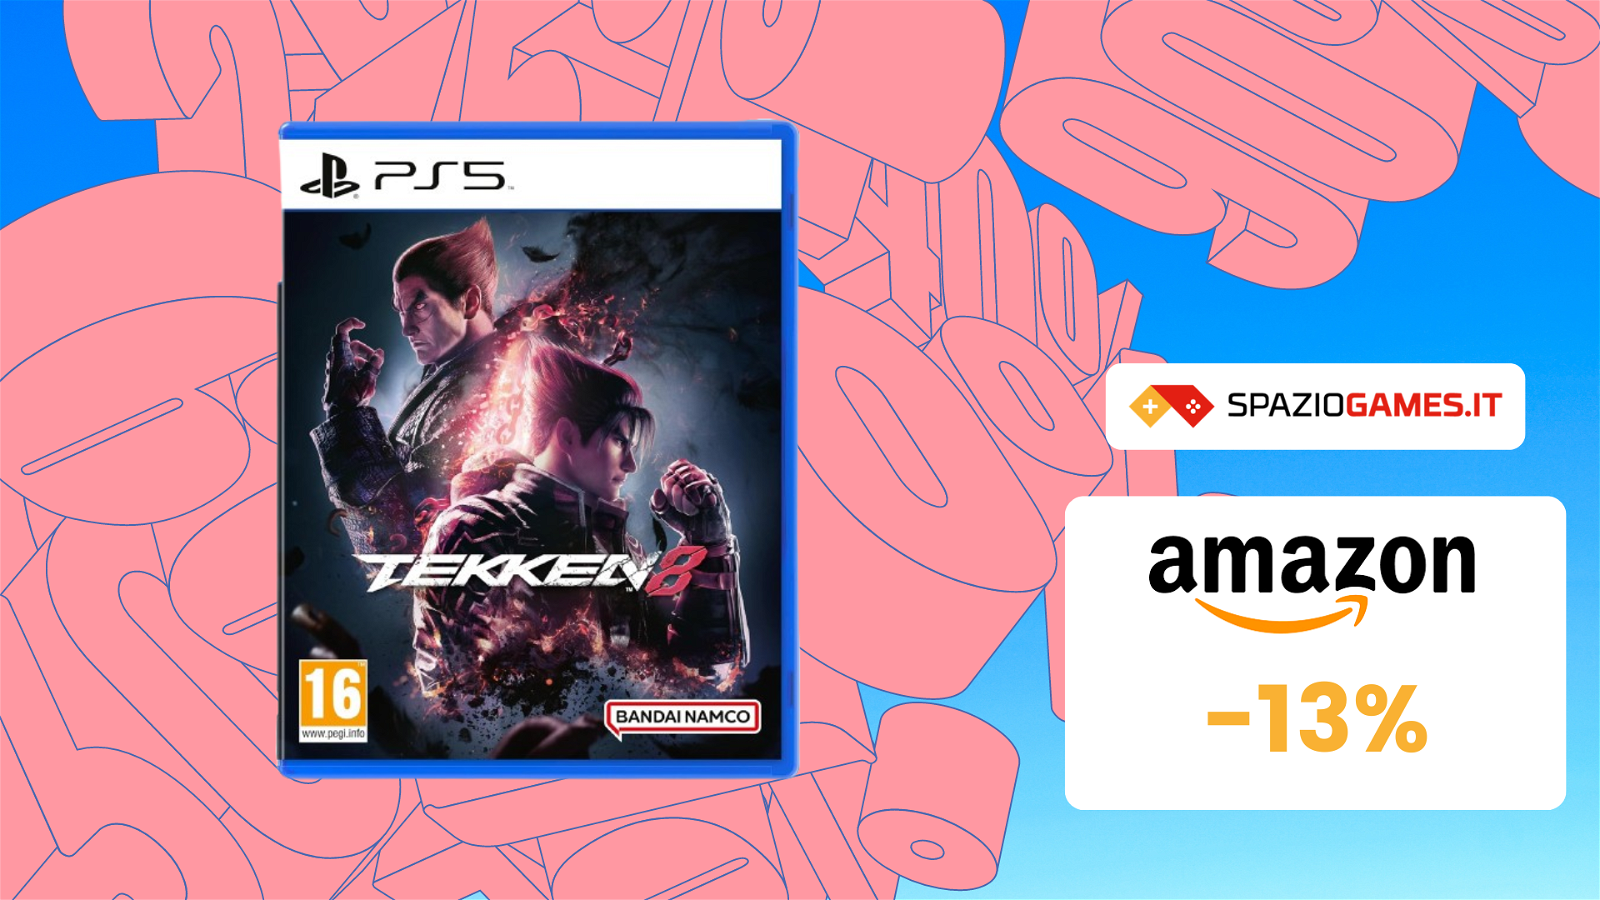 Tekken 8 è già IN SCONTO su Amazon! Risparmi il 13%